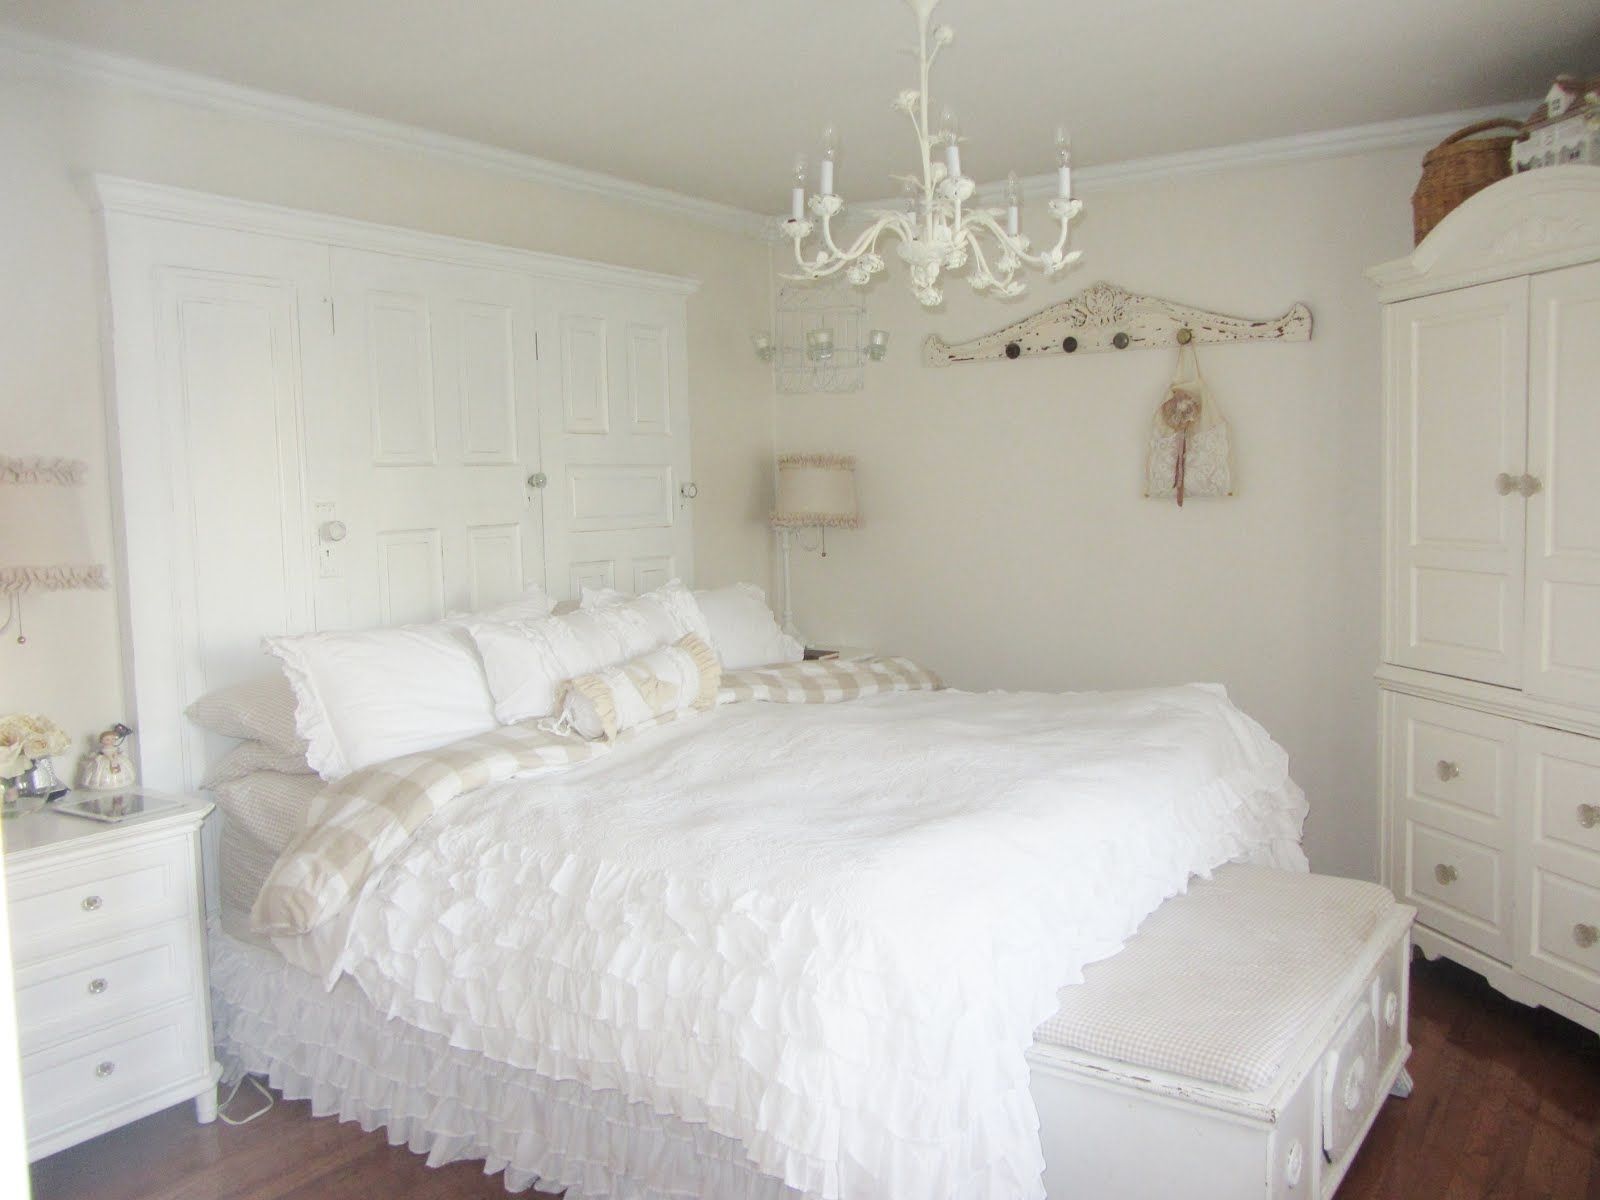 Modern Bedroom Chandeliers In Chandeliers In The Bedroom (Photo 6 of 25)